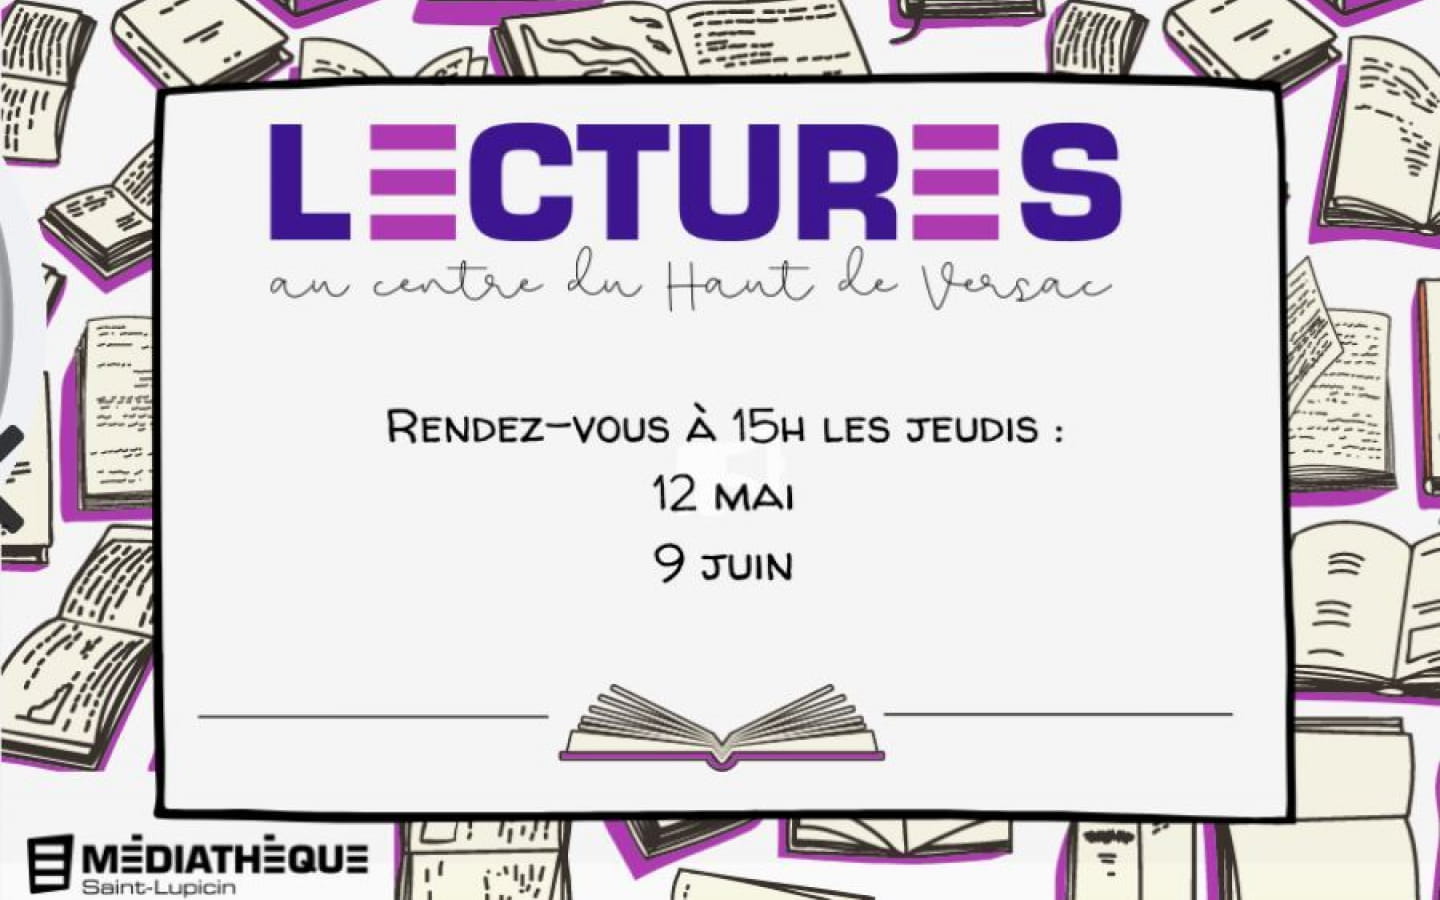 Médiathèque Haut-Jura Saint-Claude : Saint-Lupicin - Lectures